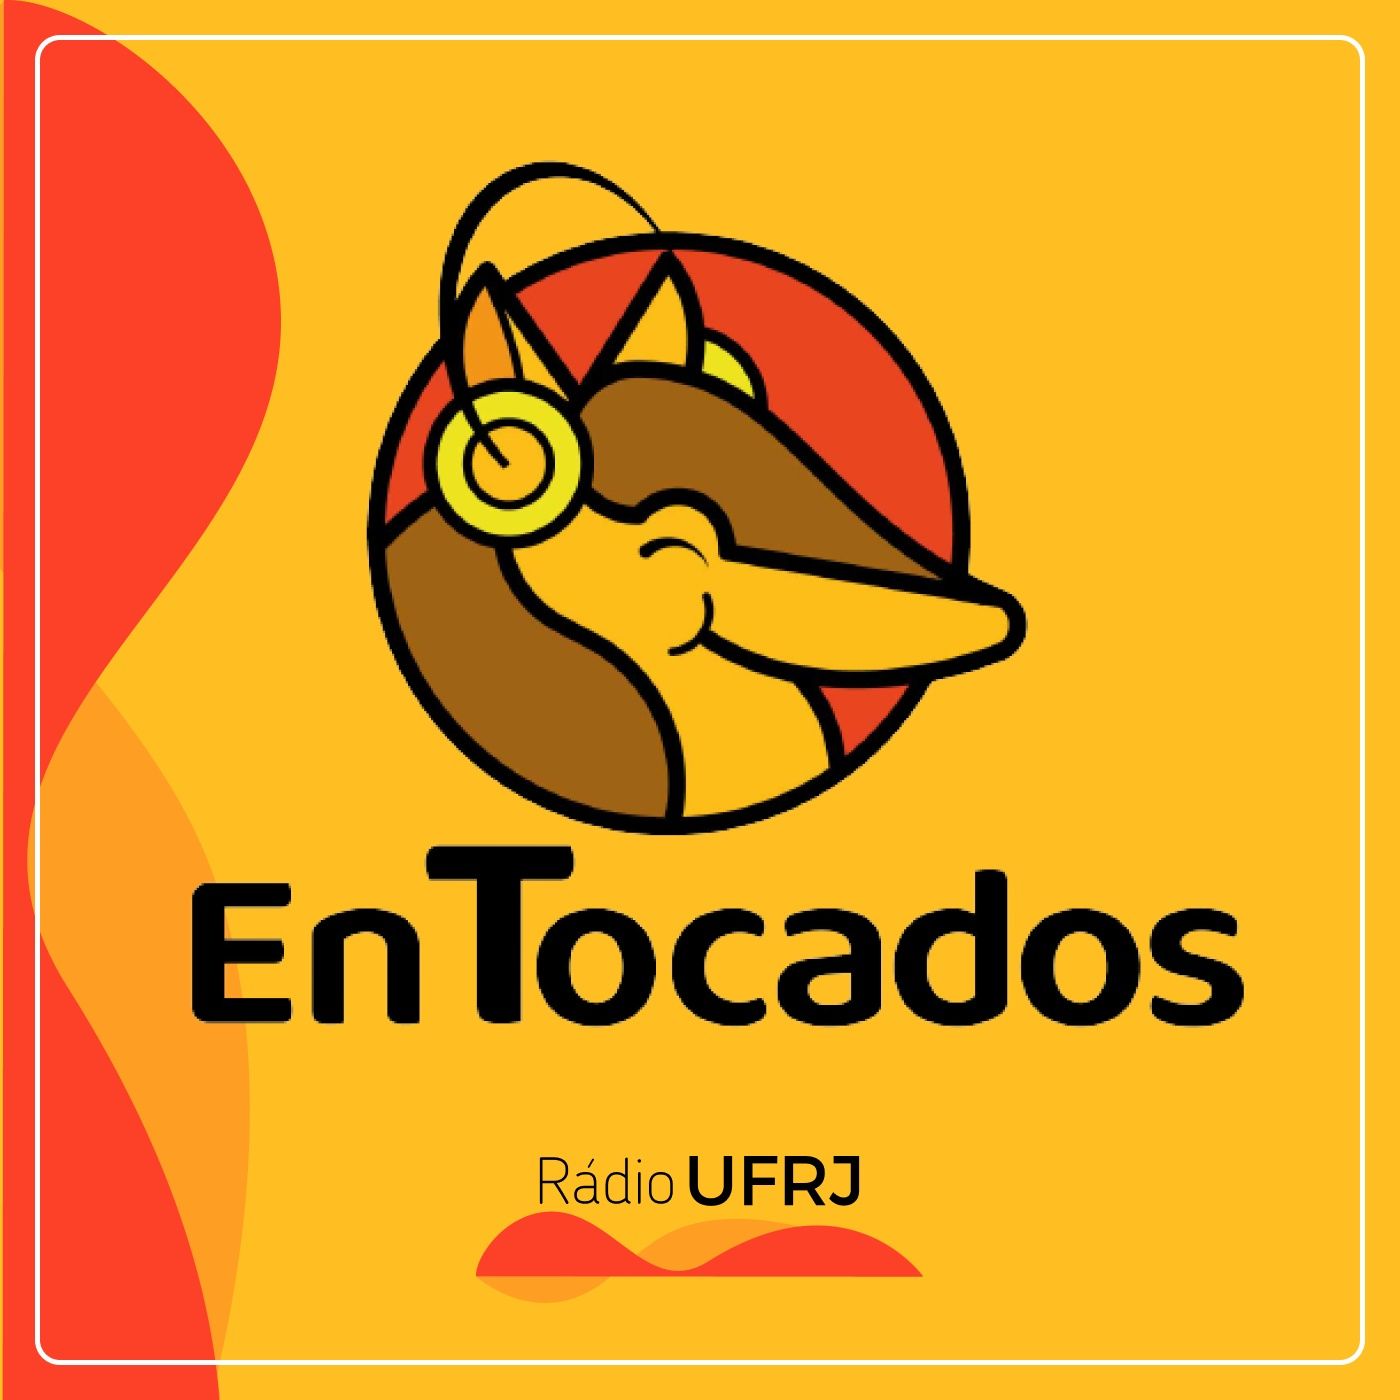 Rádio UFRJ - EnTocados